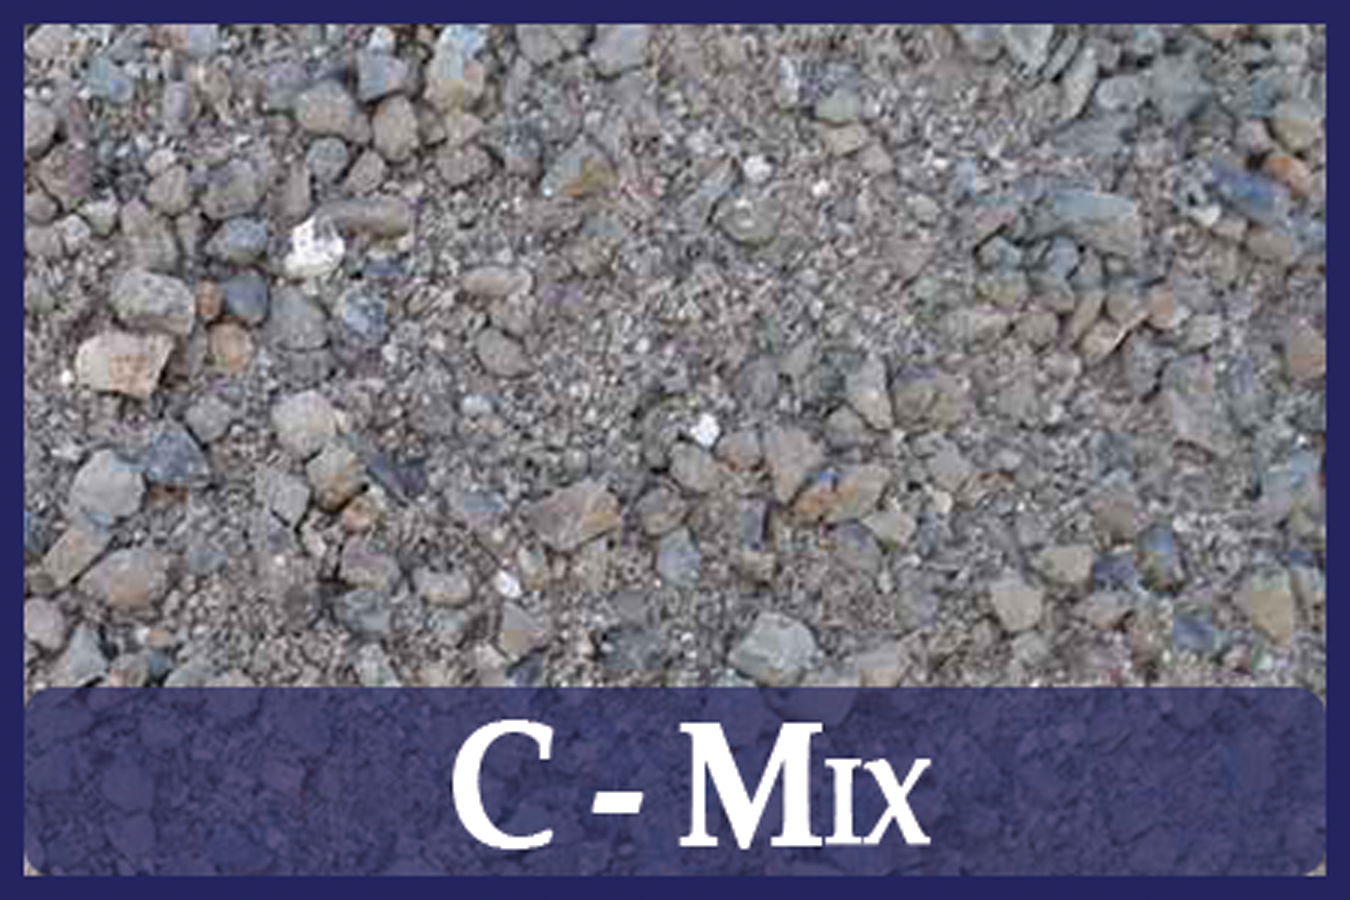 C-Mix (concrete mix)